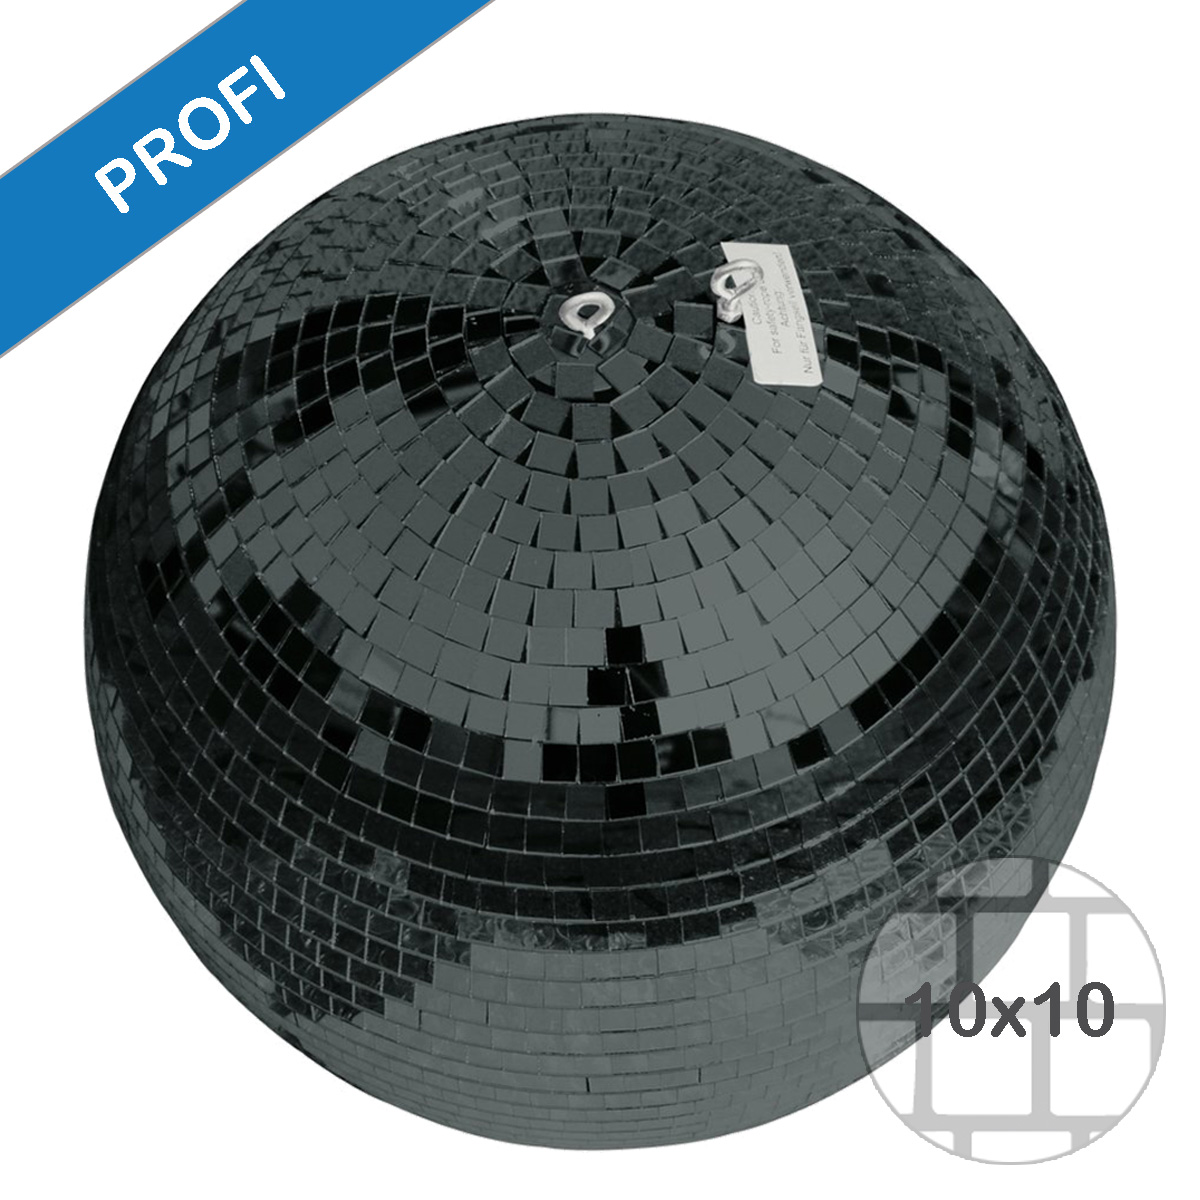 Spiegelkugel 50cm schwarz- Diskokugel (Discokugel) Party Lichteffekt - Echtglas - mirrorball safety black color